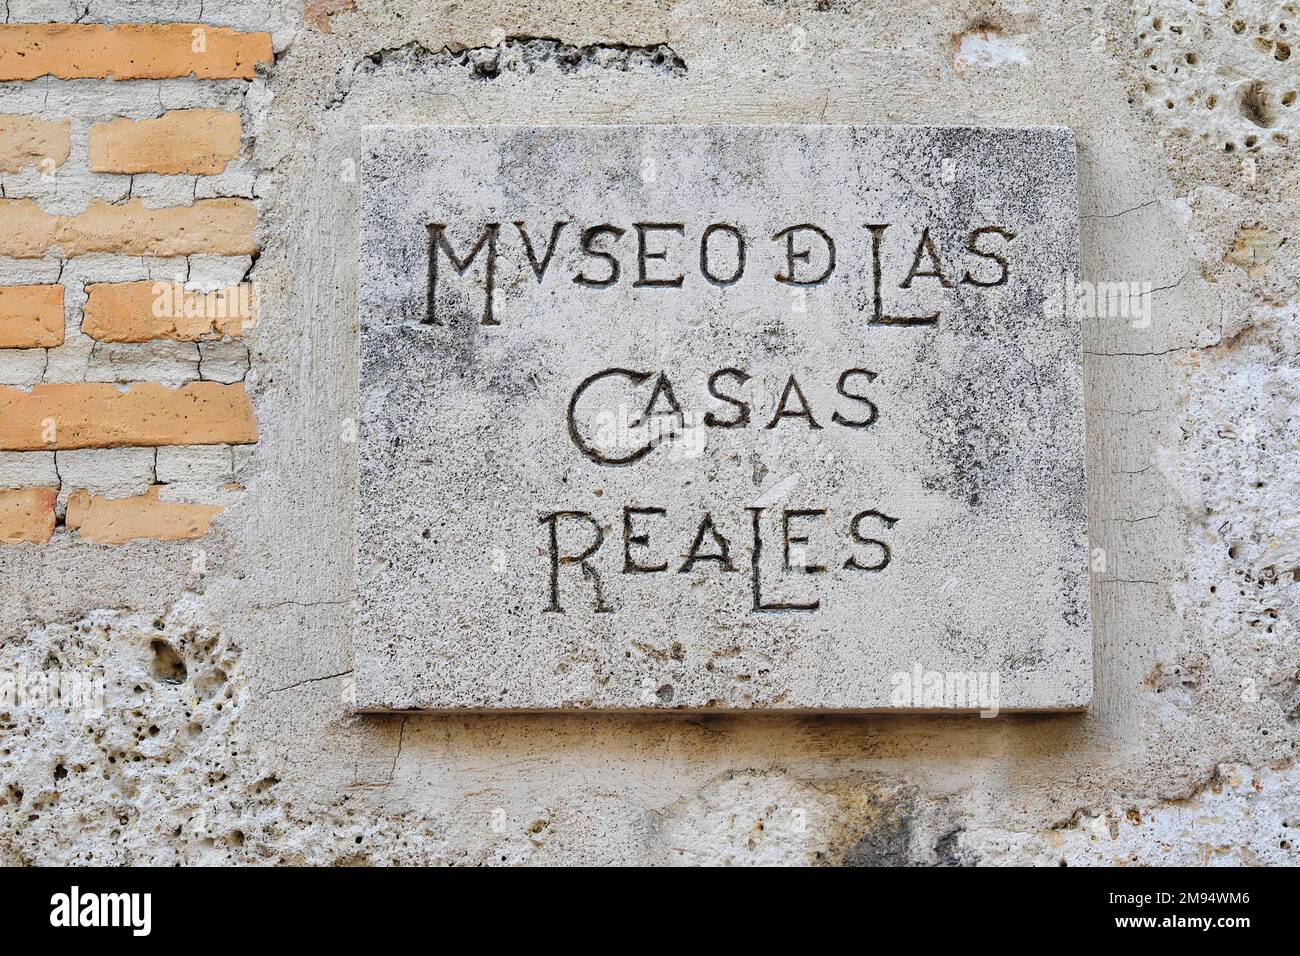 Museo de las Casas Reales Stone Tablet, Santo Domingo, Dominican Republic, Caribbean, Central America Stock Photo